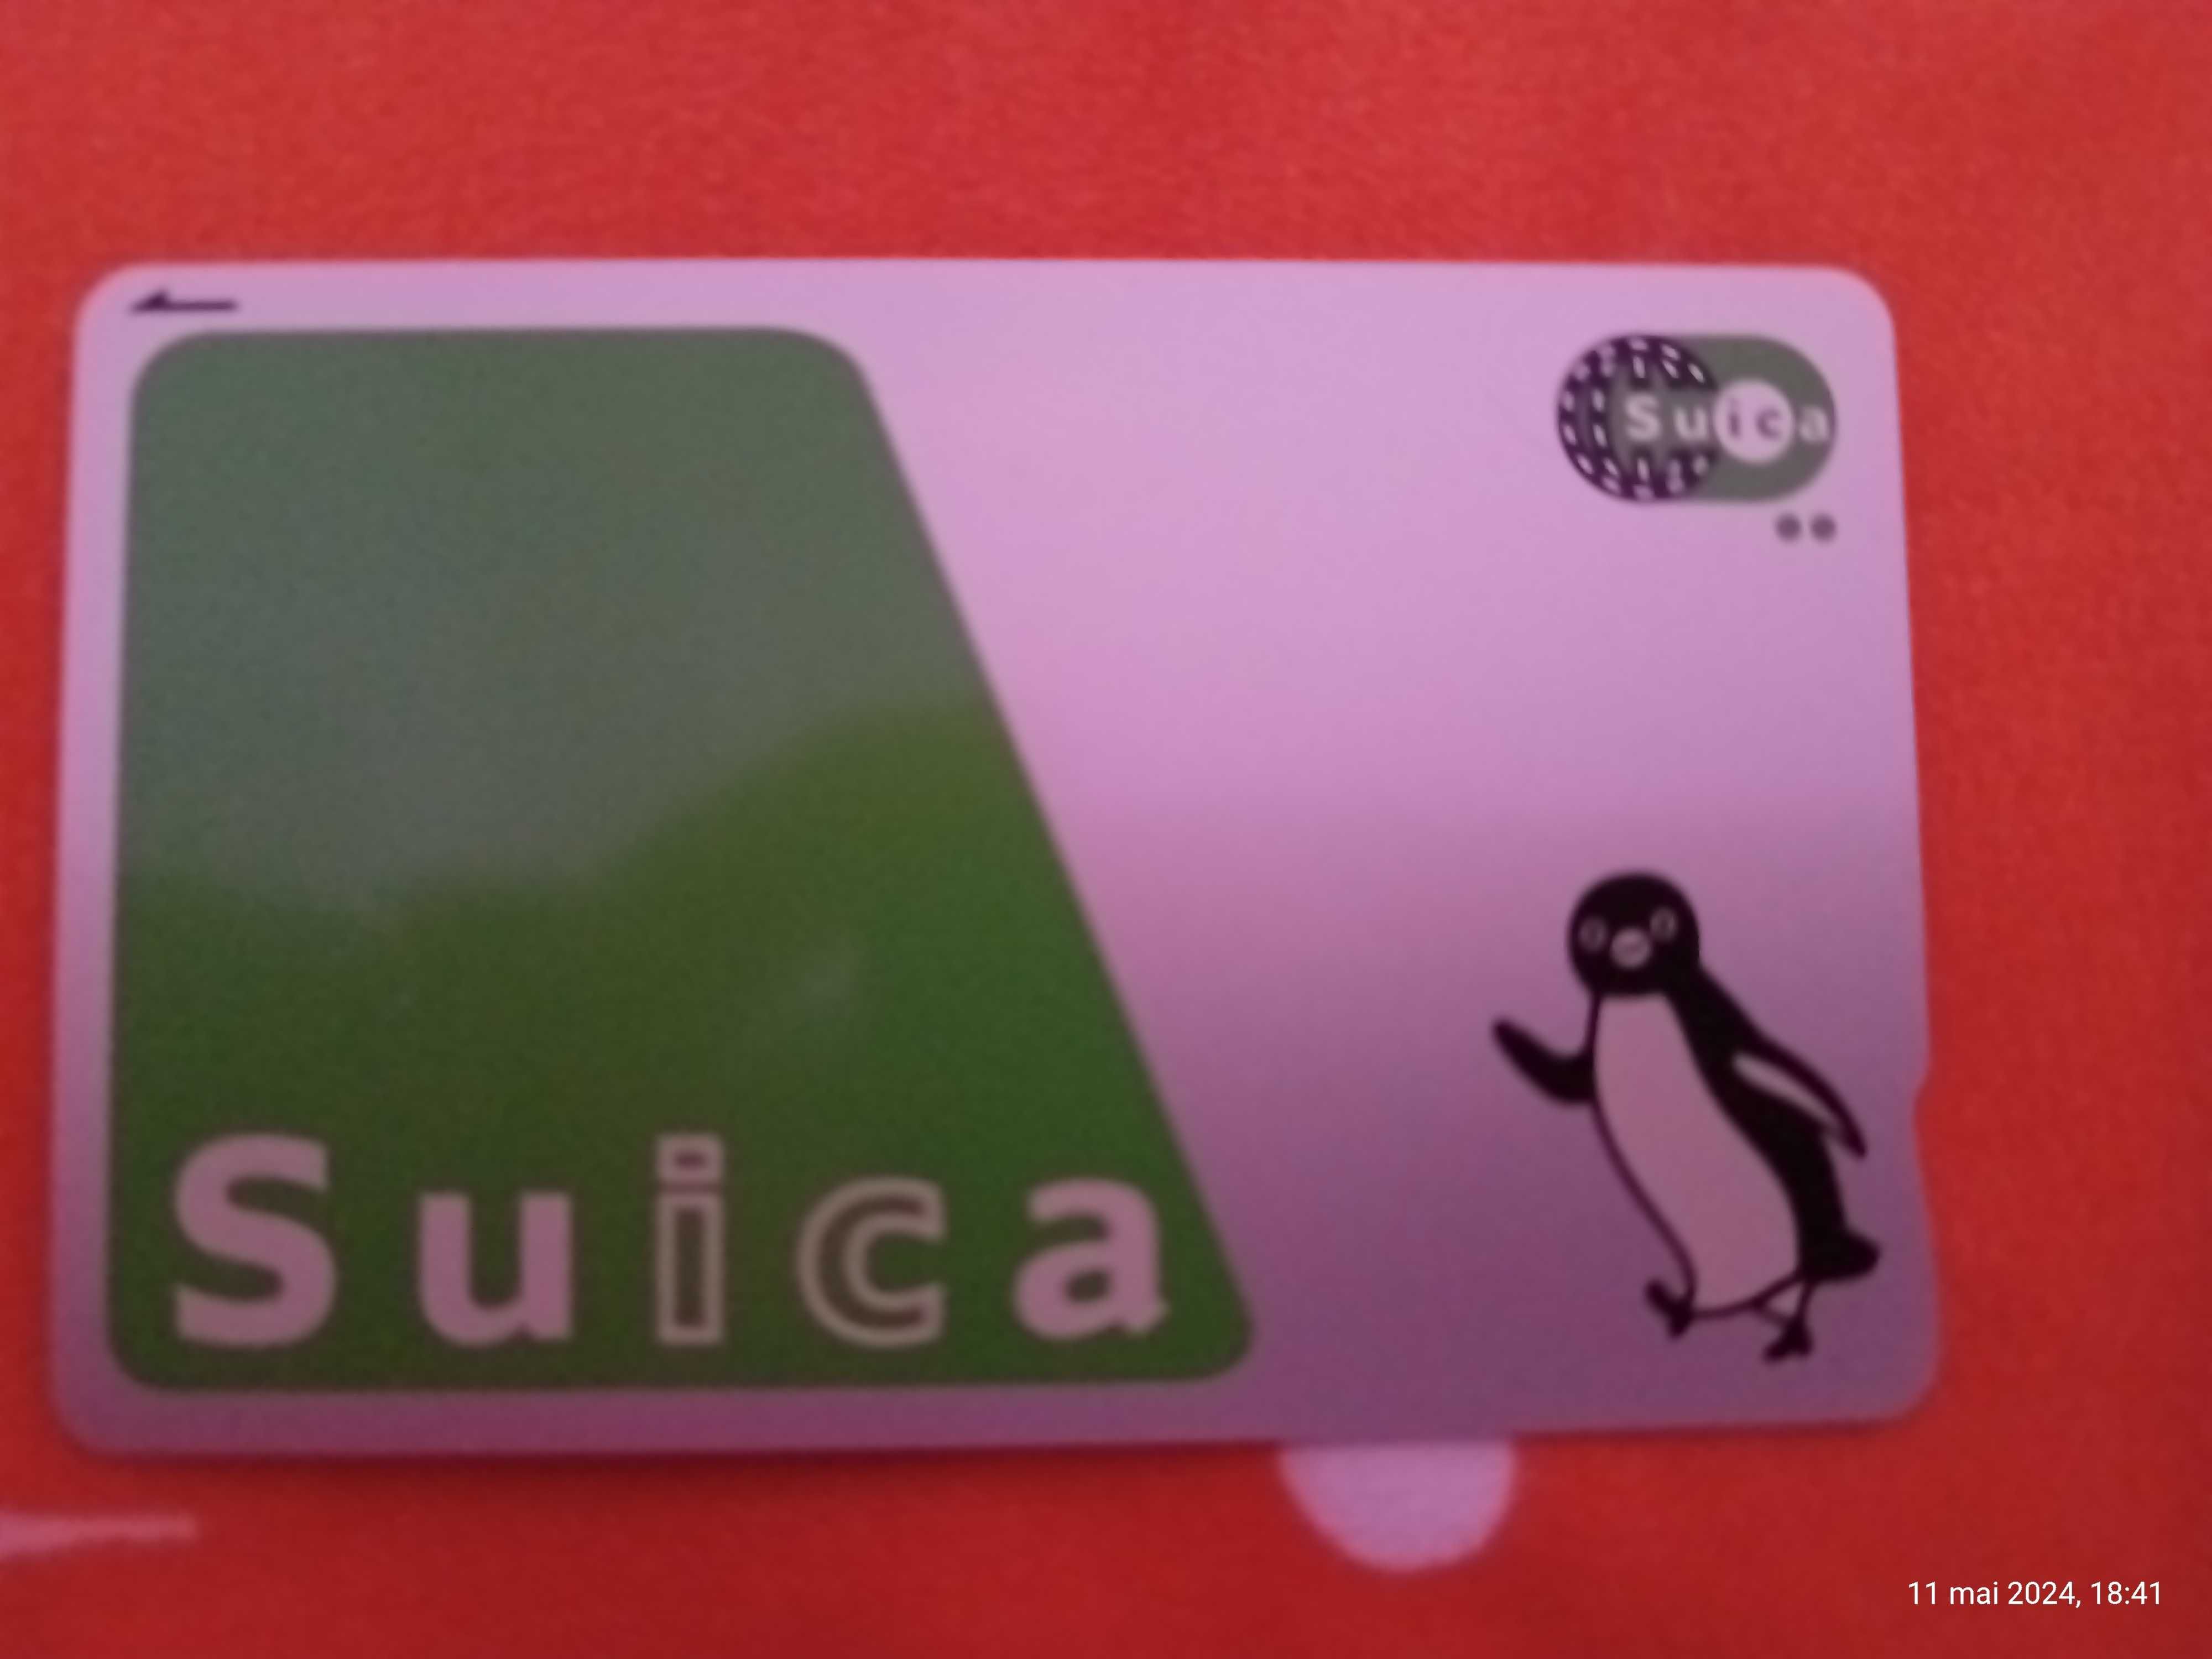 Vând 2 carduri SUICA pentru orice tip de transport în Japonia